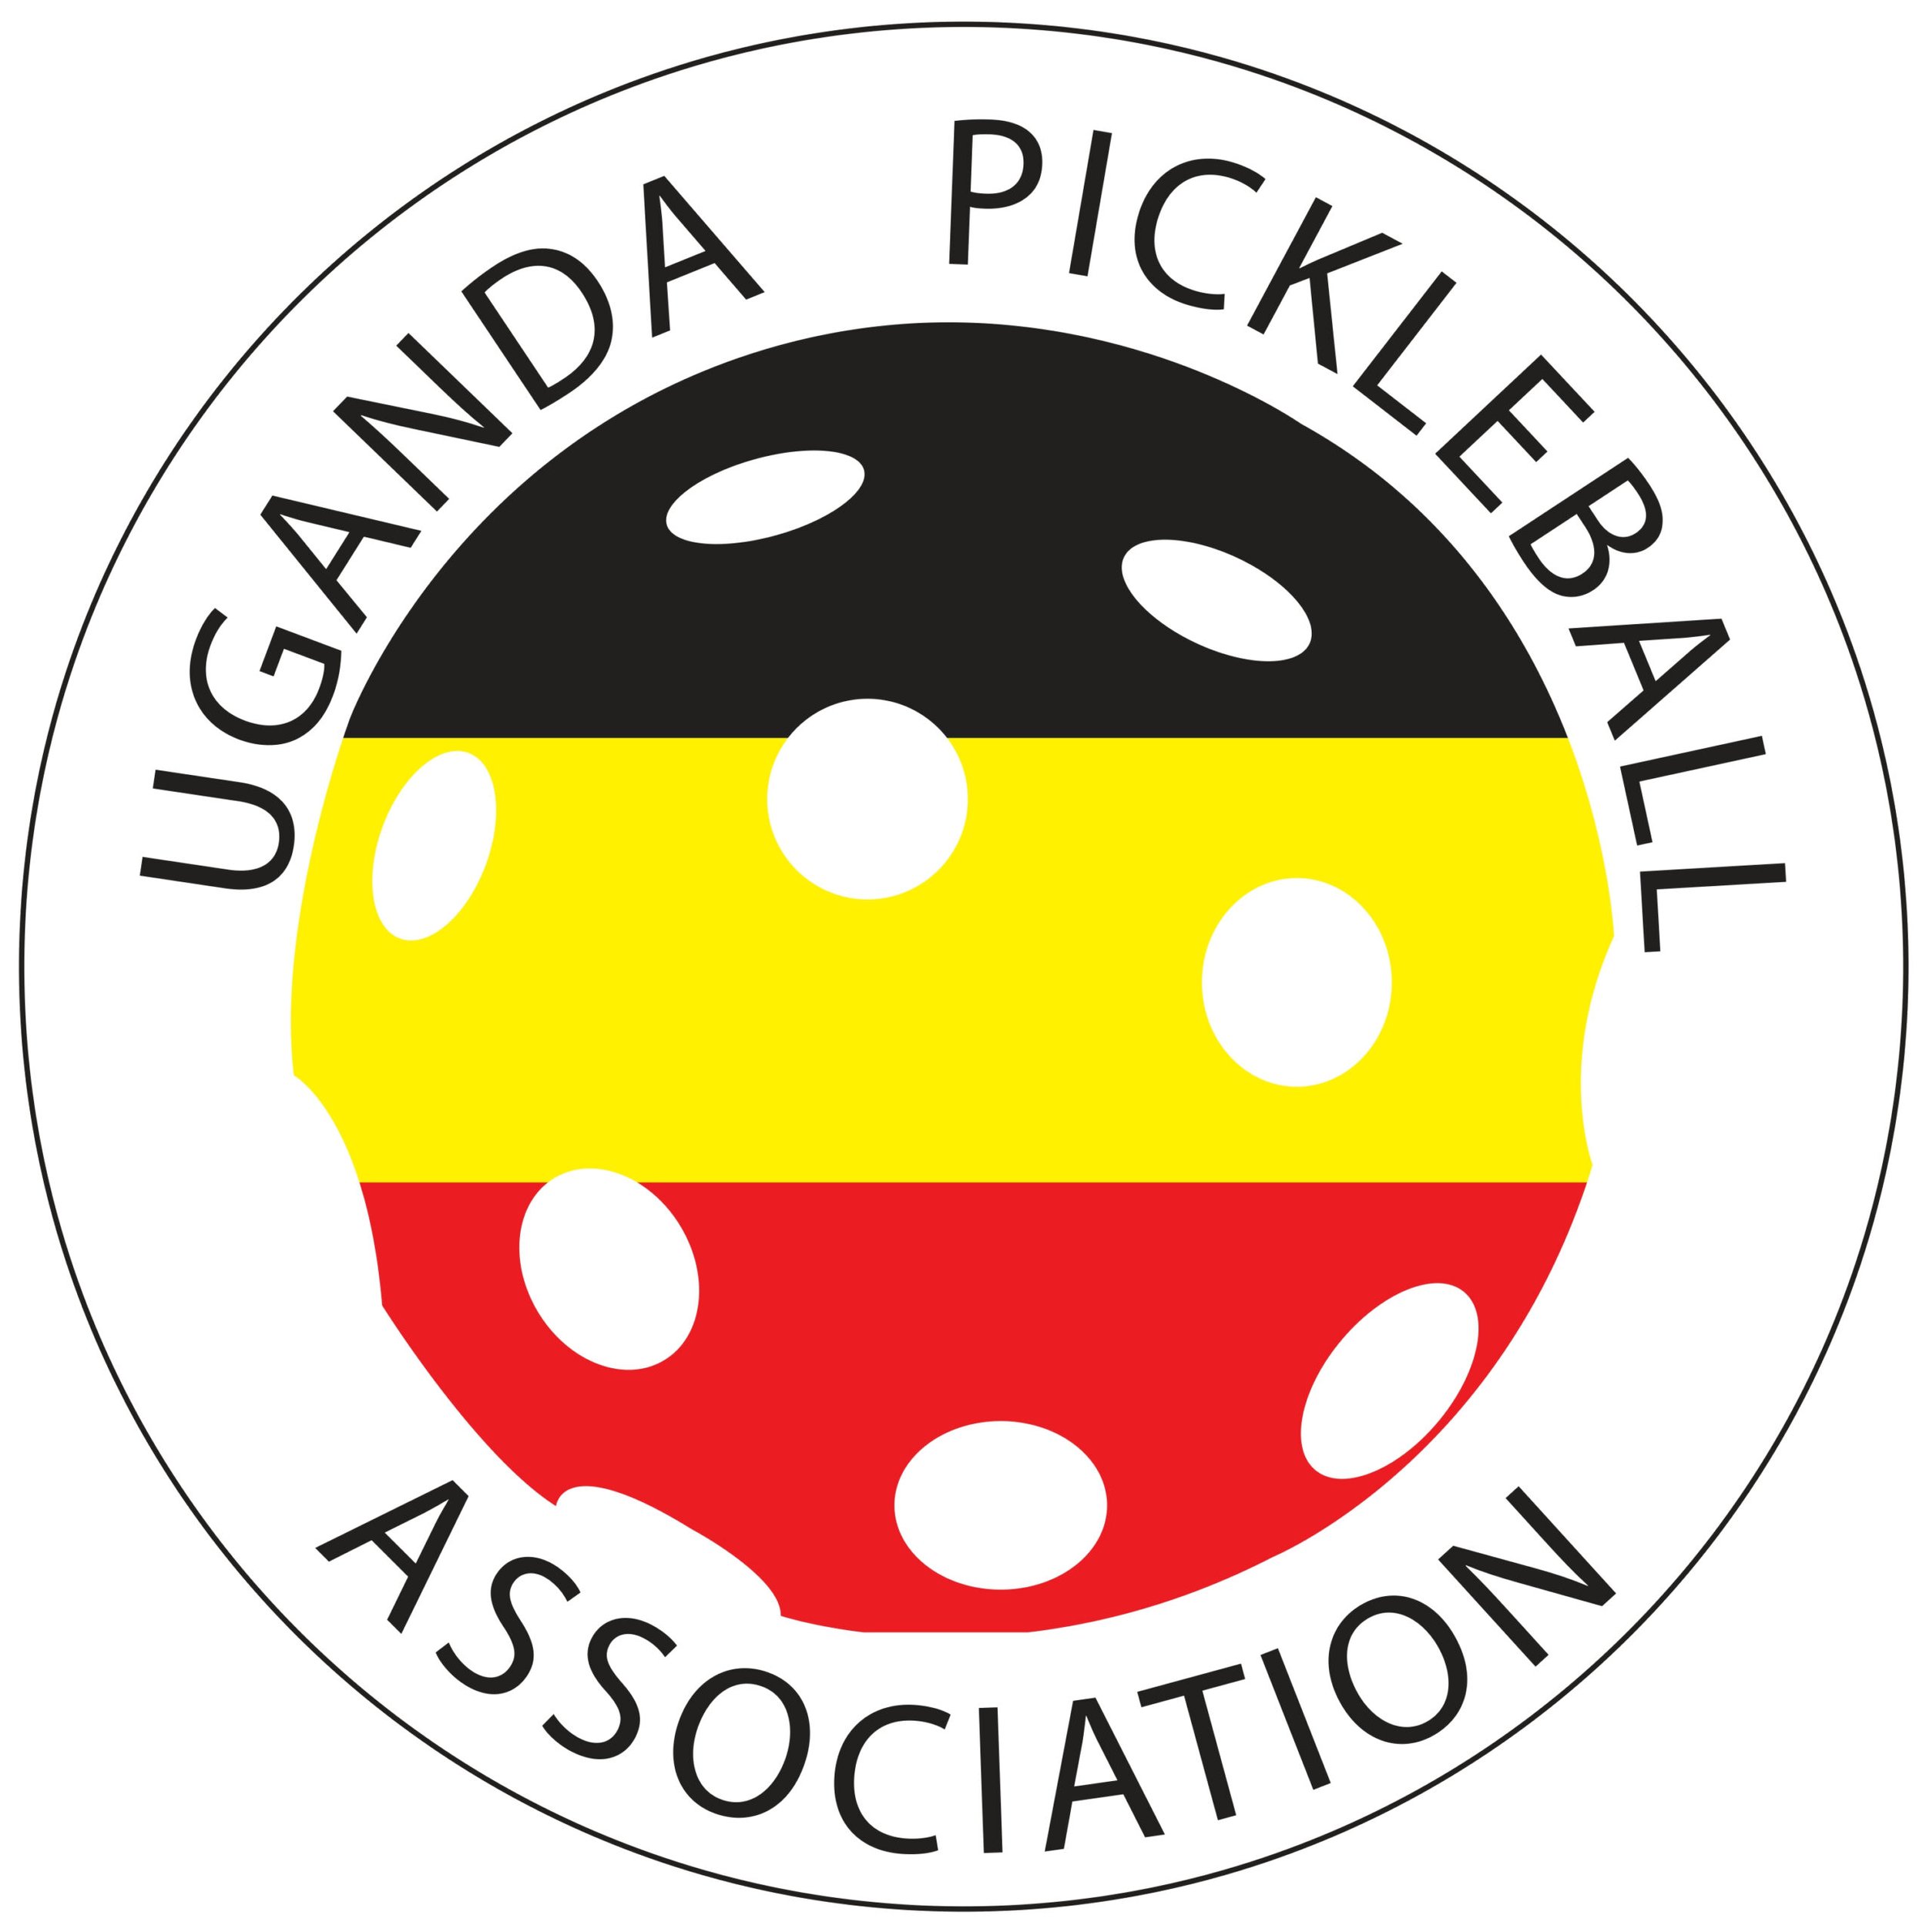 UGANDA-PICKLE-LOGO-2-scaled.jpeg